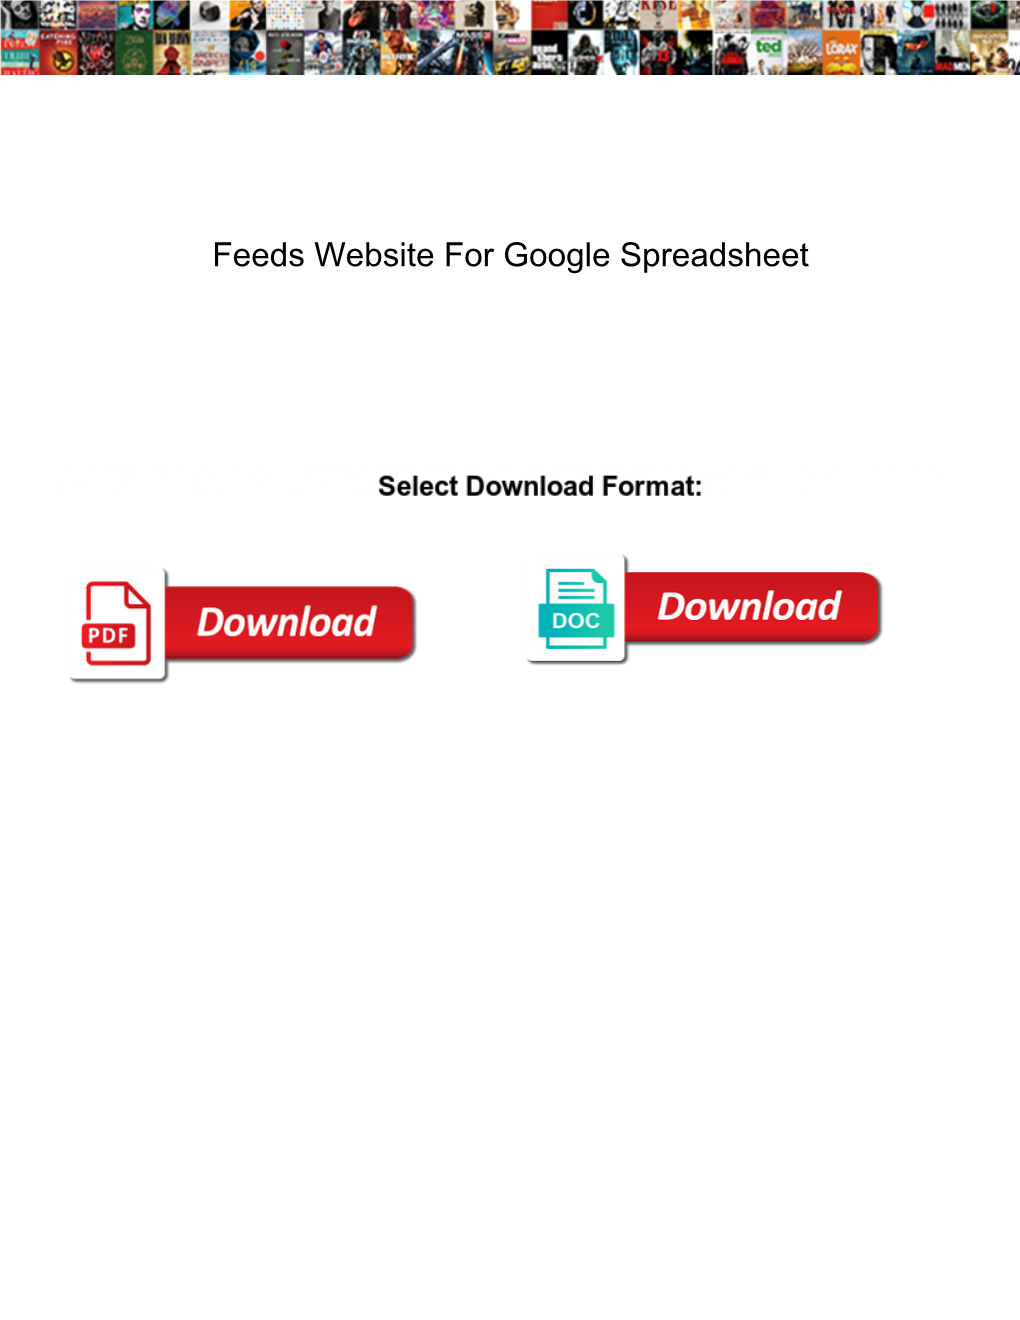 Feeds Website for Google Spreadsheet